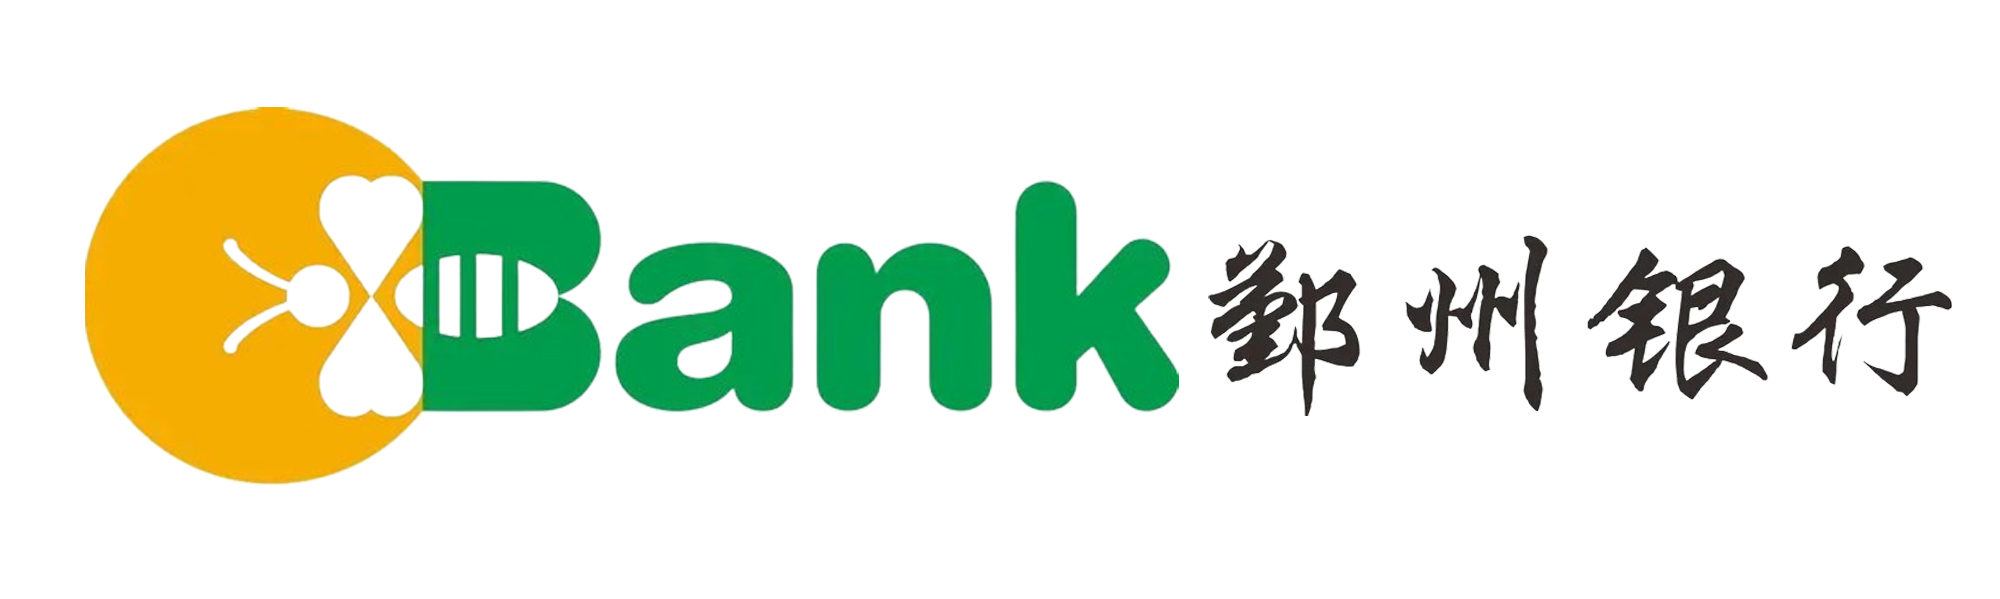 鄞州银行logo图片